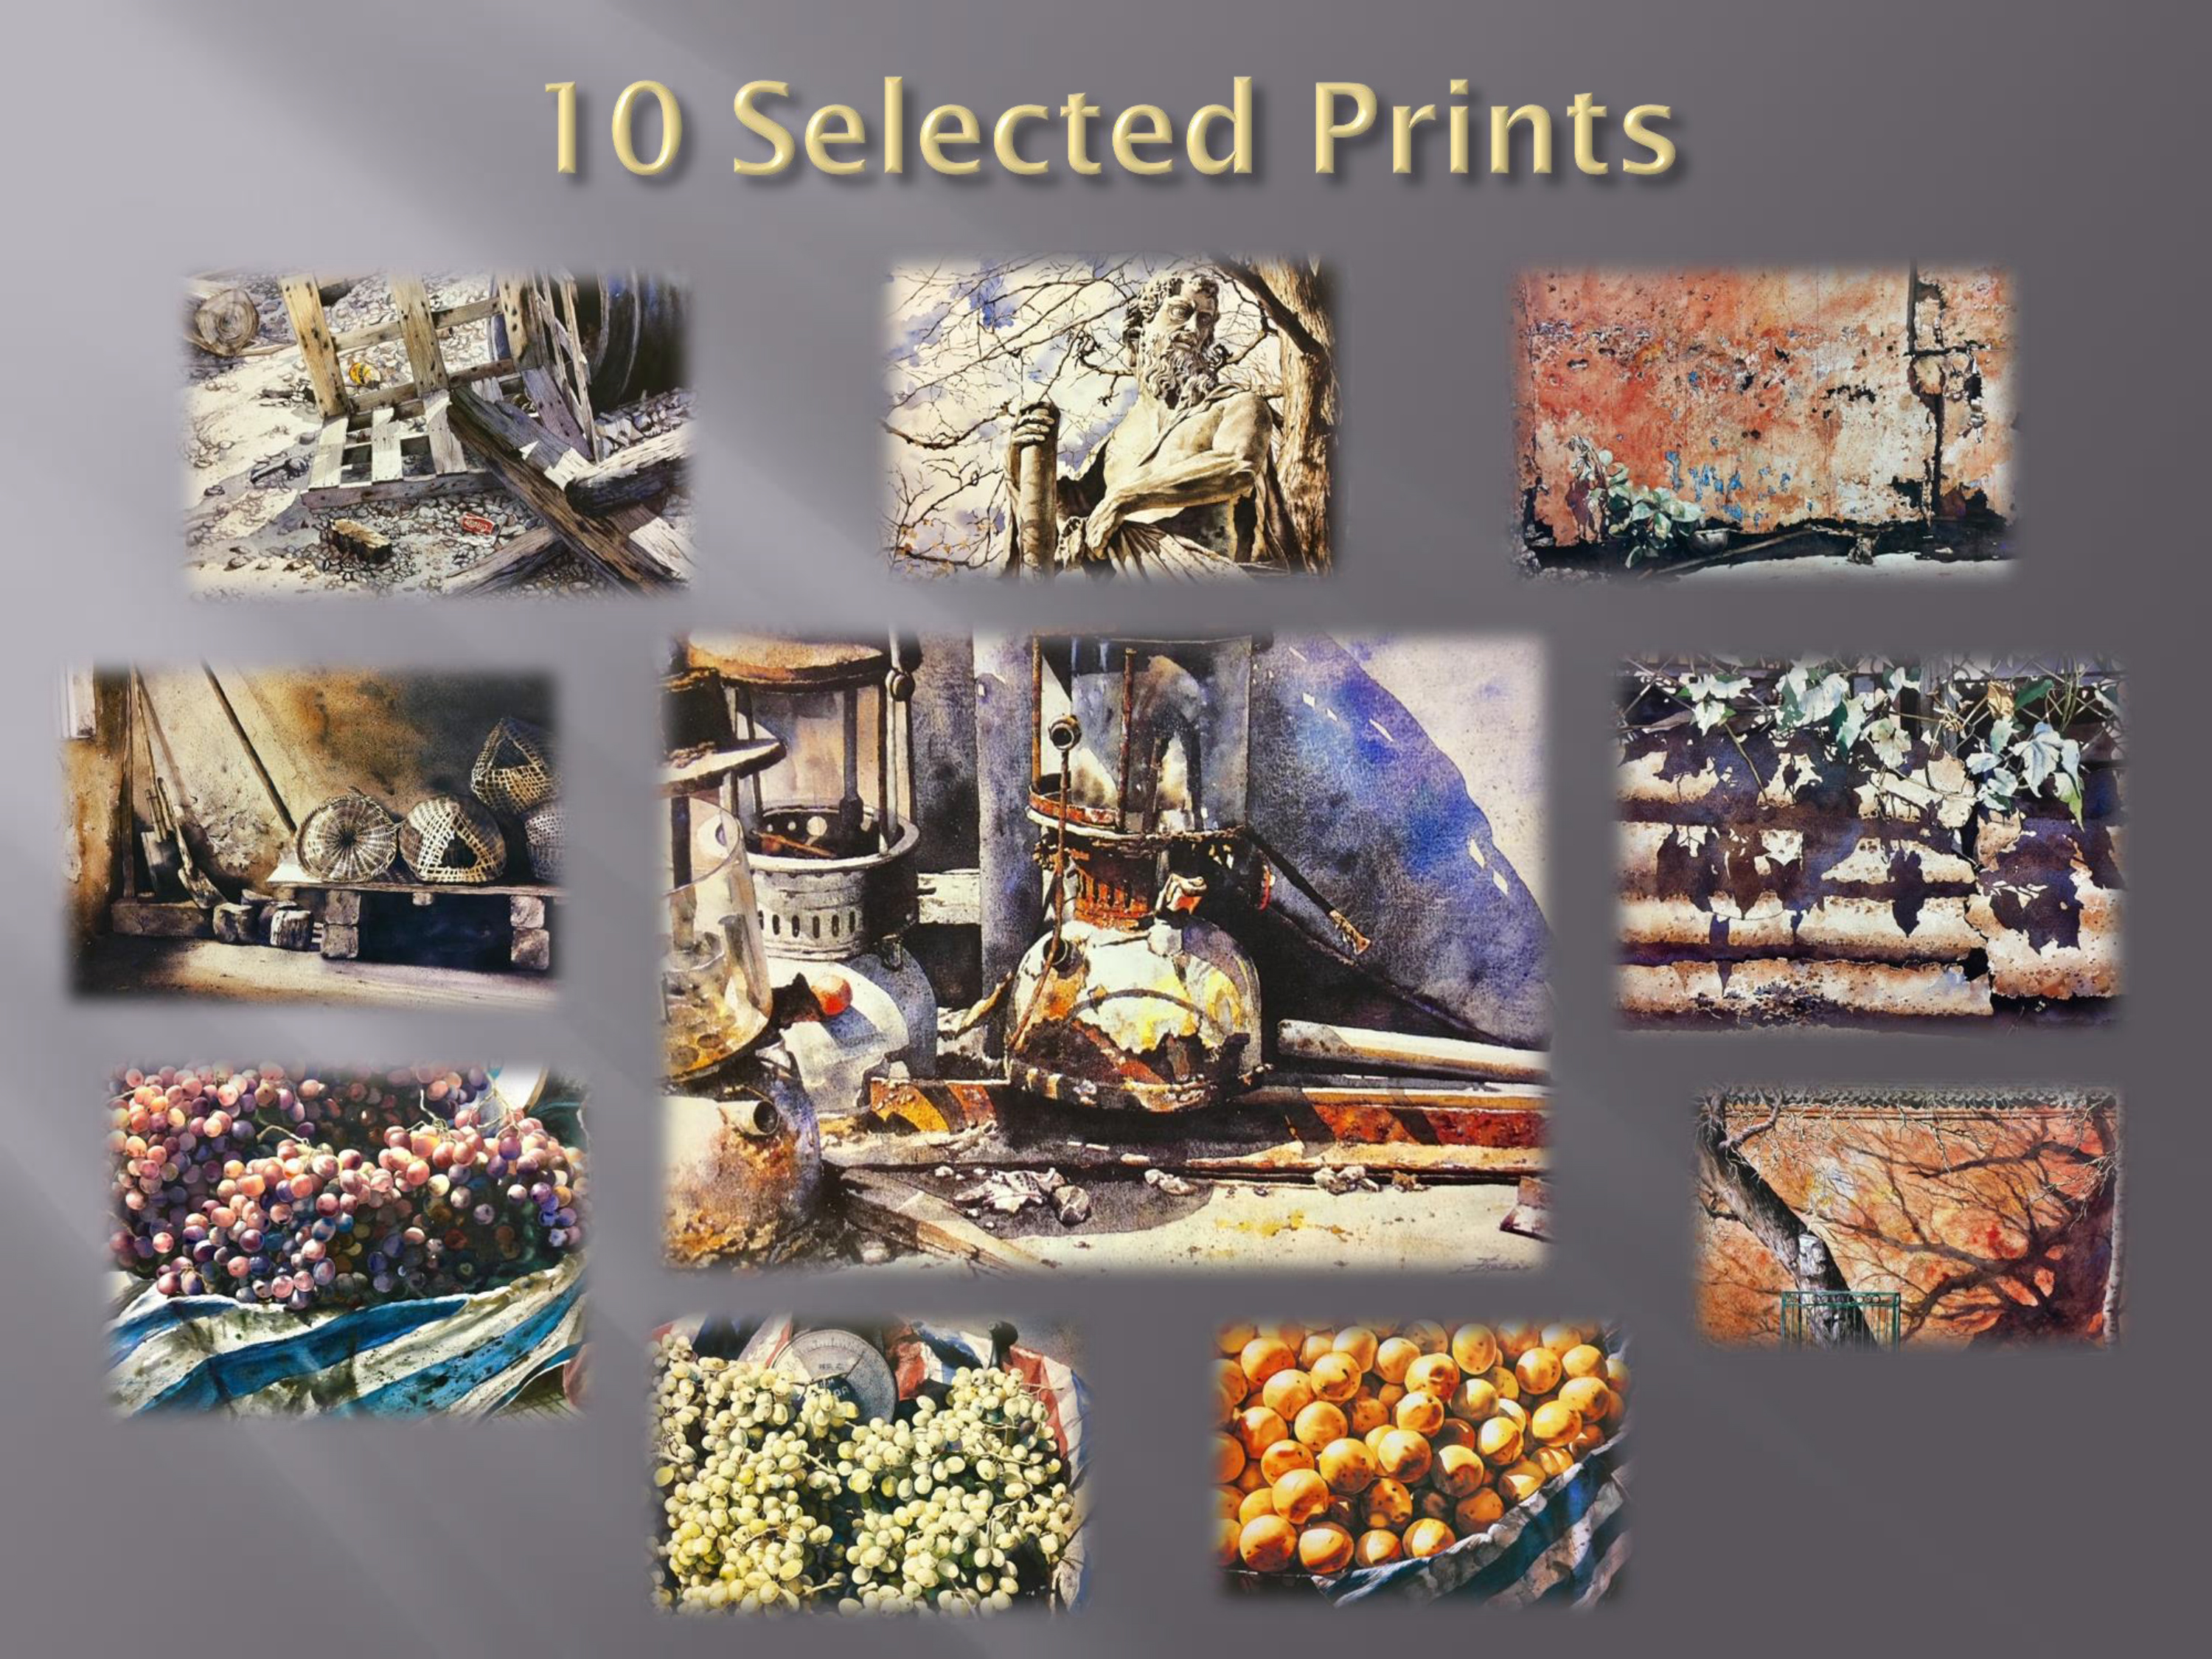 610-10-selected-prints.jpg